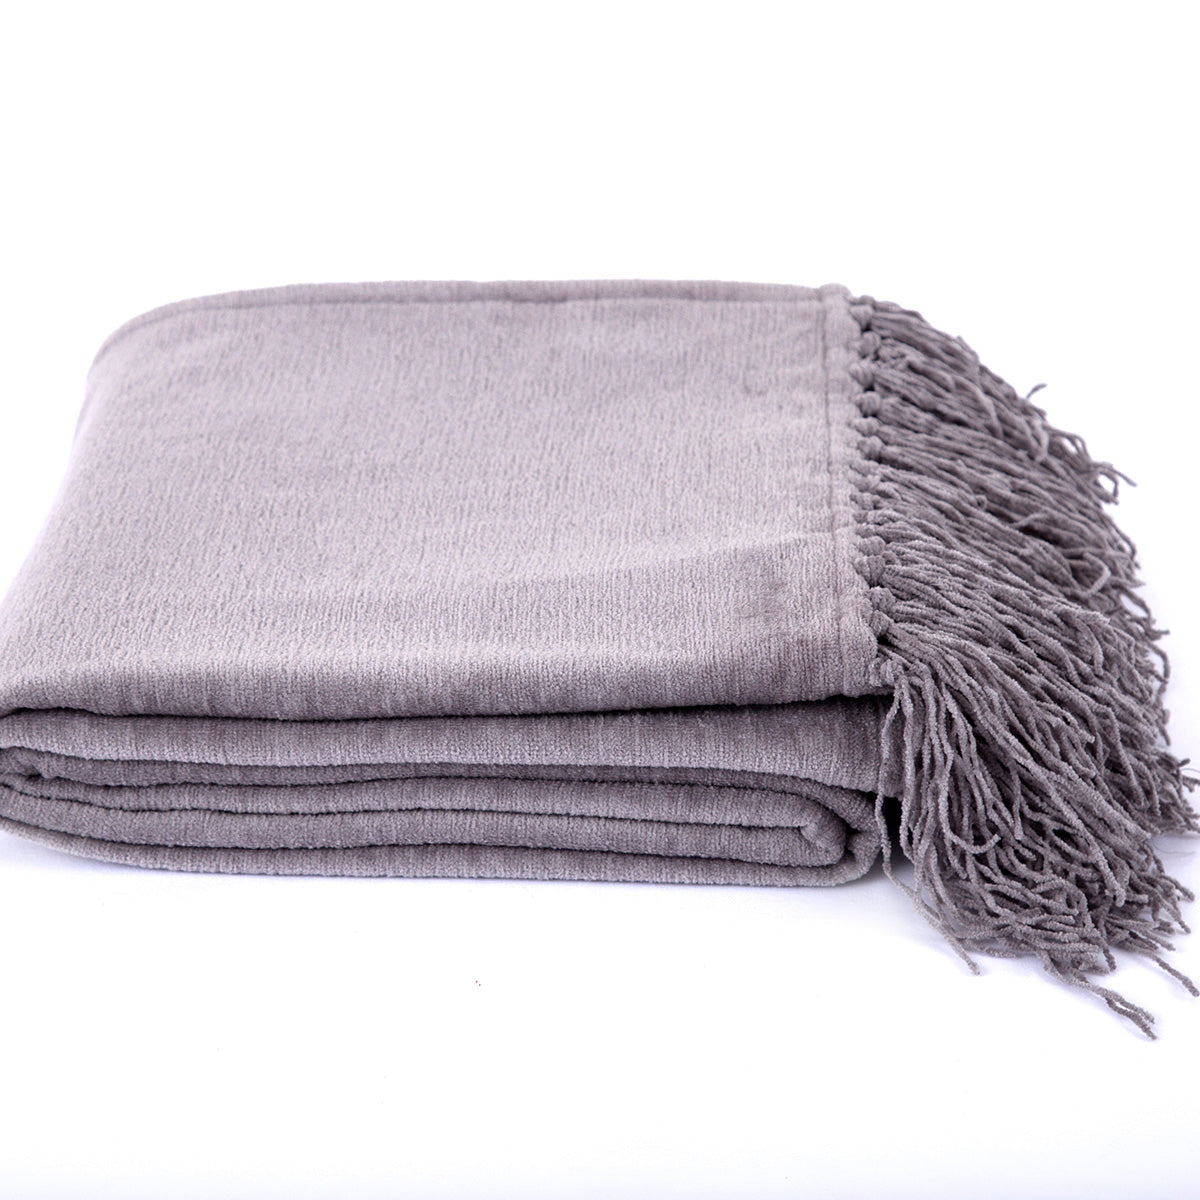 Jessica 100% Cotton Solid Woven Super Soft Wild Dove Throw/Sofa/Multi Cover/Single Bed Cover